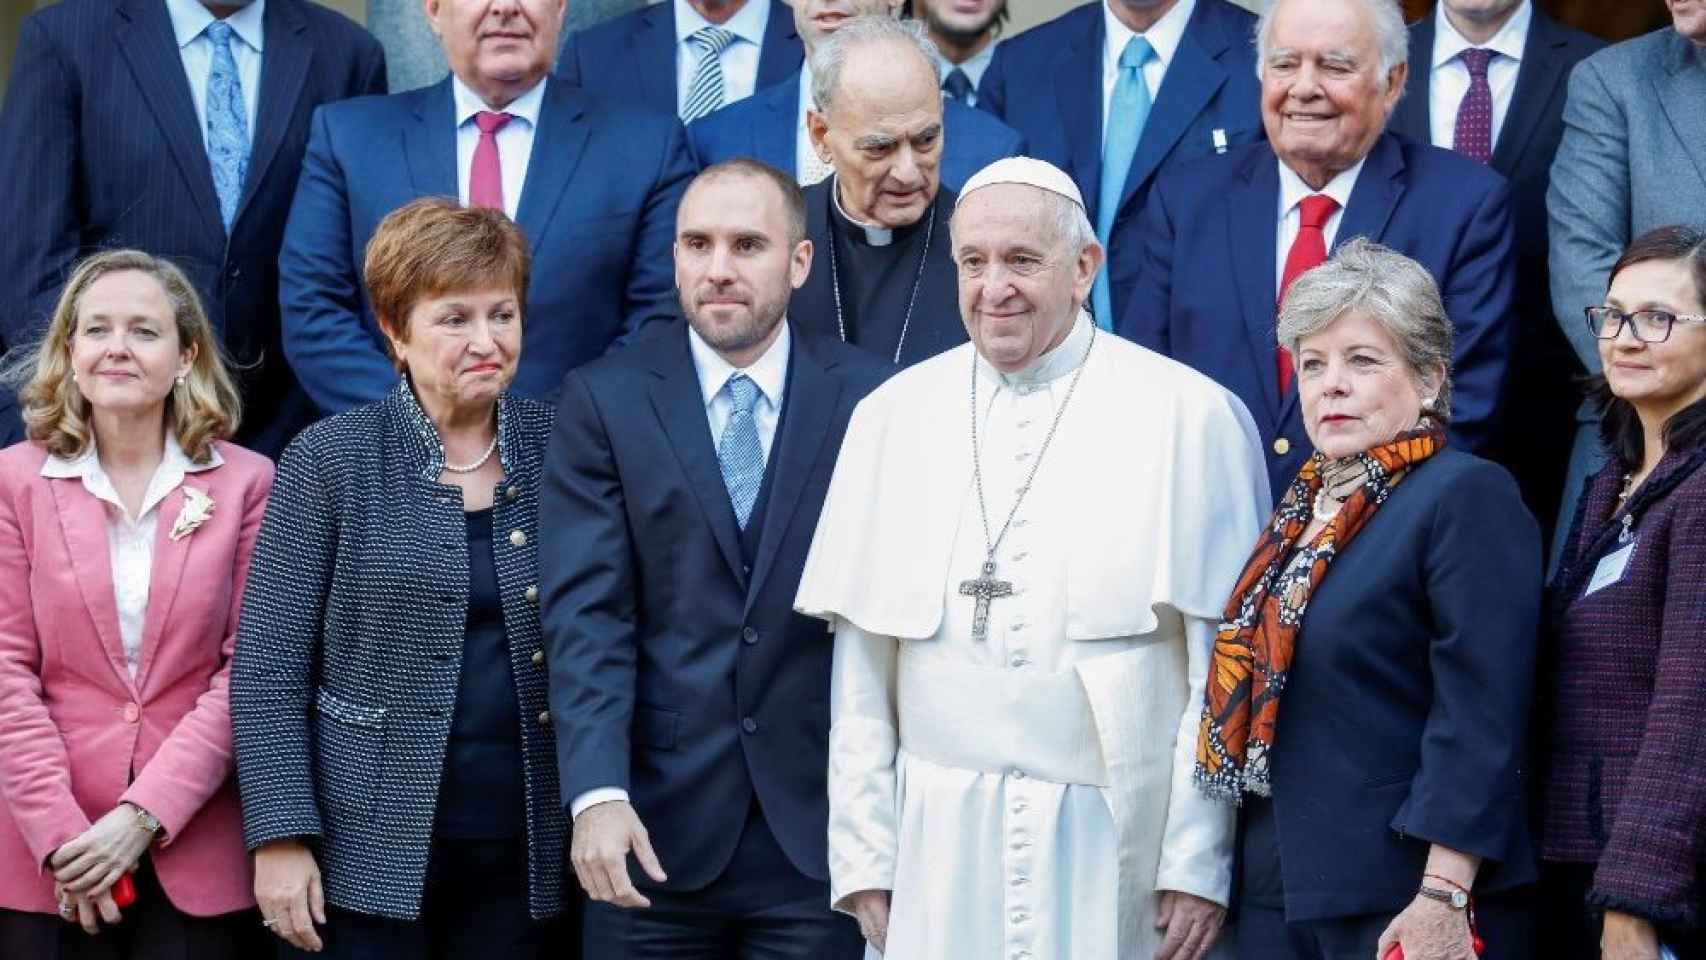 El Papa Francisco, en el centro de la imagen, durante su participación en el encuentro 'Nuevas formas de fraternidad solidaria, inclusión, integración e innovación'.